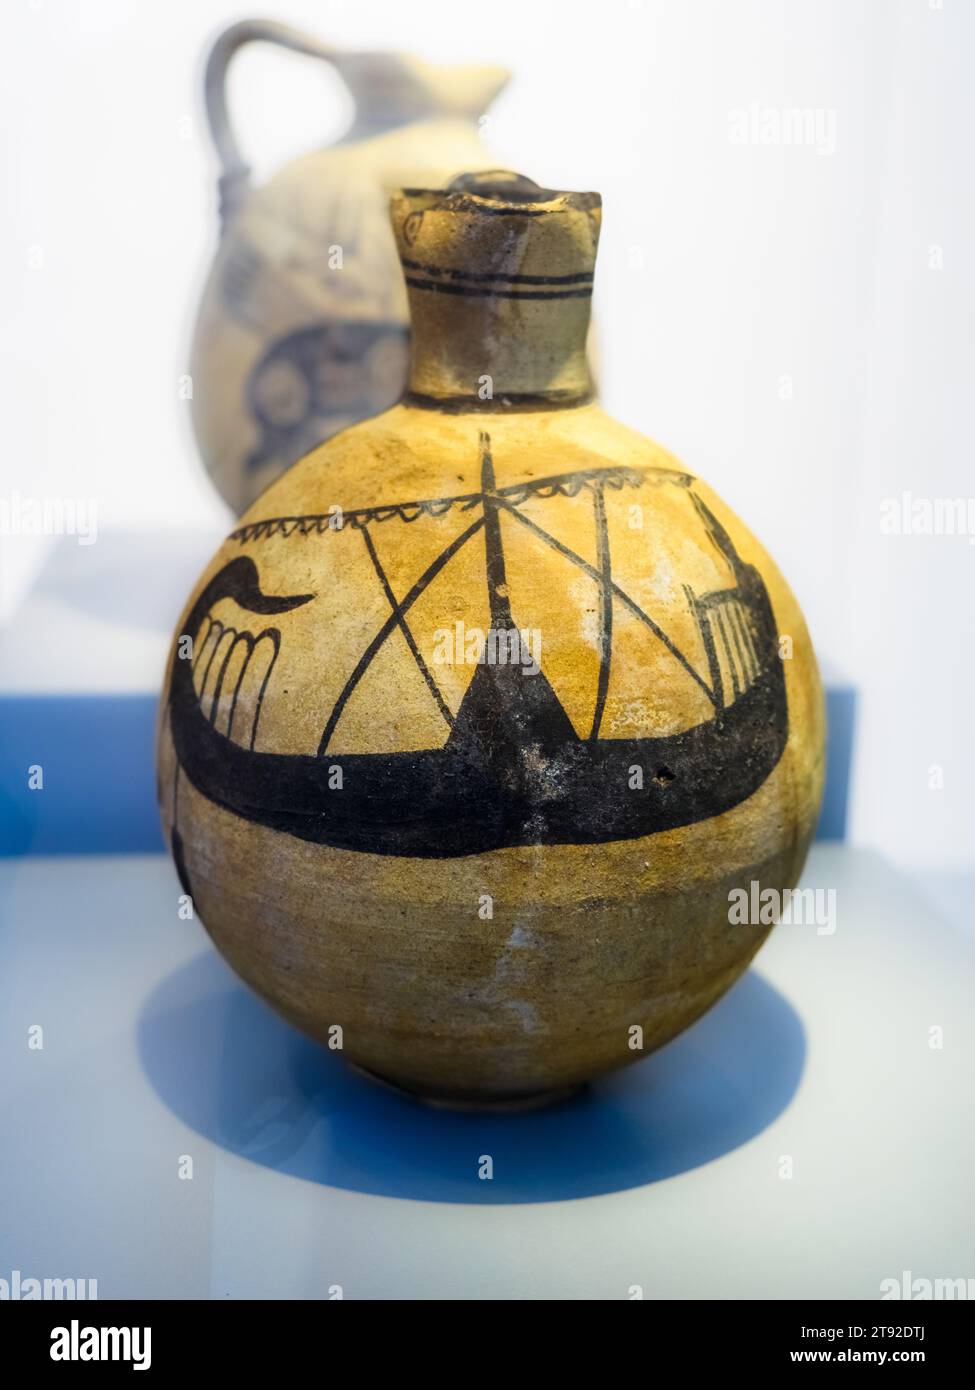 Cruche chypriote avec représentation d'un navire phénicien (750-600 av. J.-C.) - Musée archéologique régional Antonino Salinas - Palerme, Sicile Banque D'Images